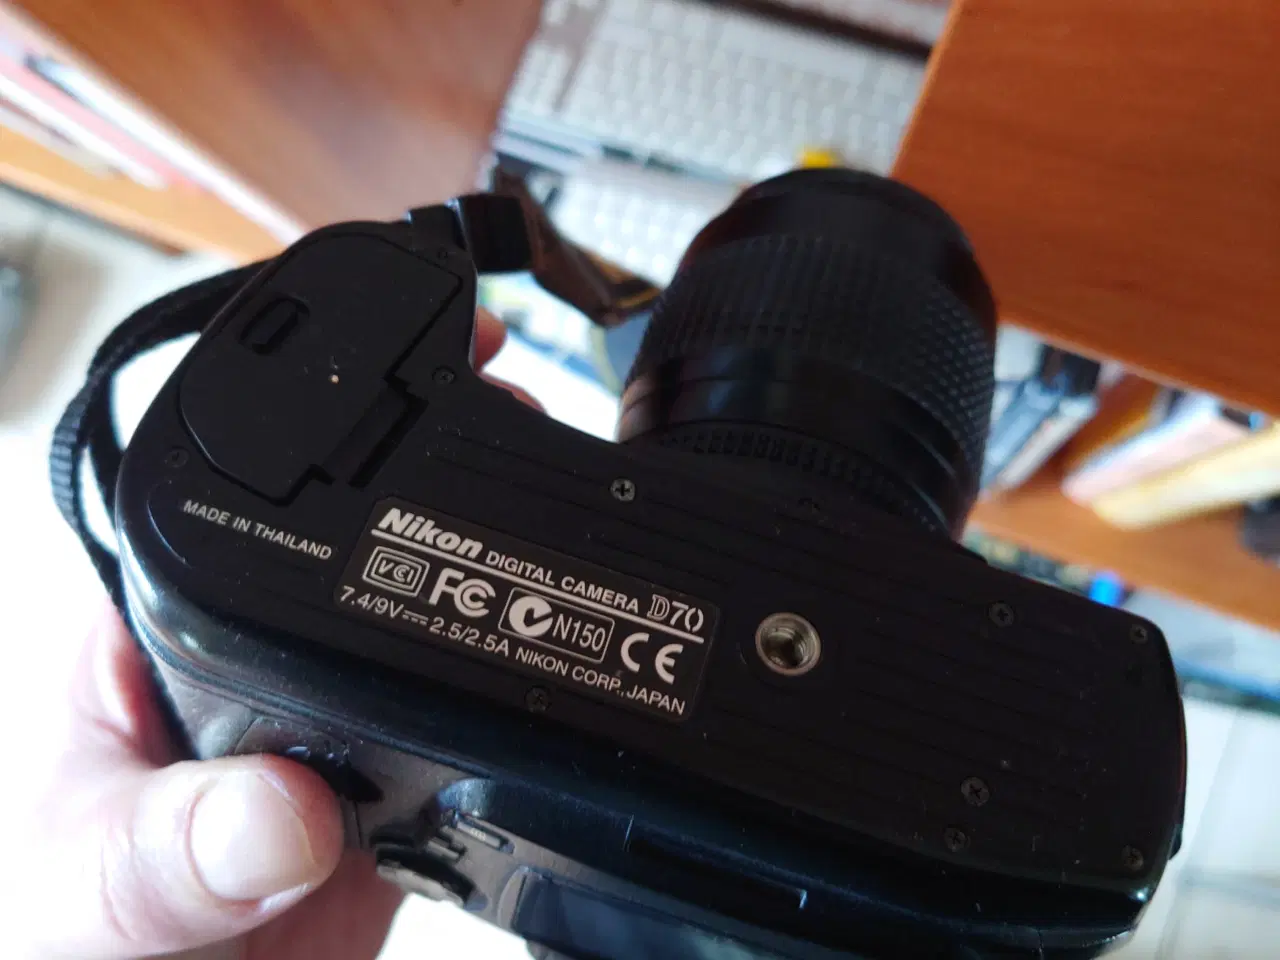 Billede 6 - Nikon D70 , 2Gb ram, 35-80mm objektiv og ny taske